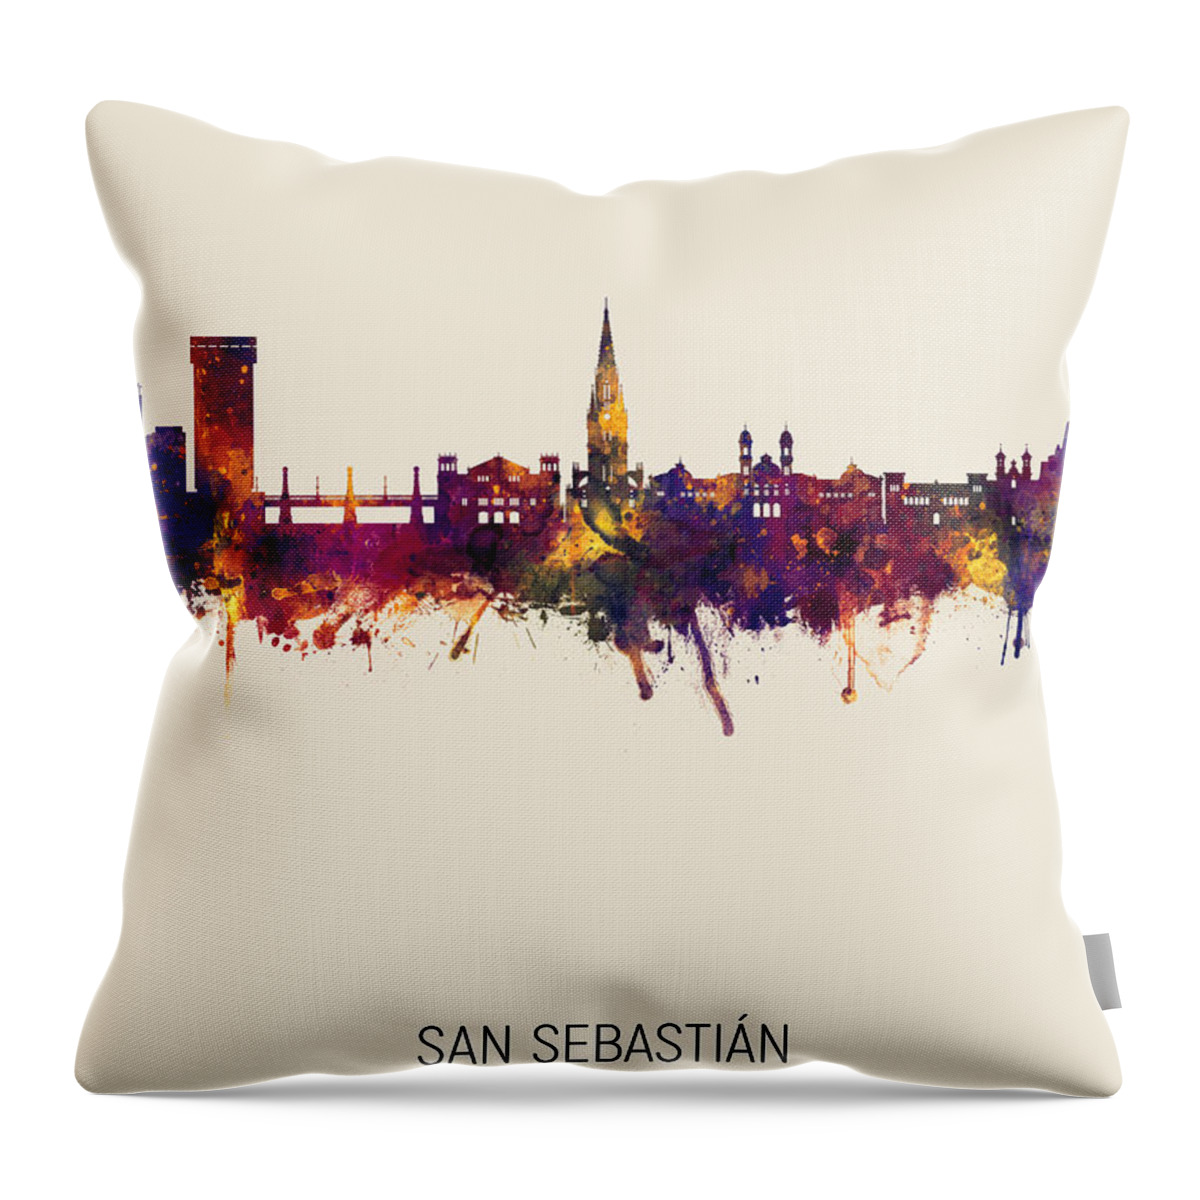 San Sebastián Throw Pillow featuring the digital art San Sebastian Spain Skyline #5 by Michael Tompsett